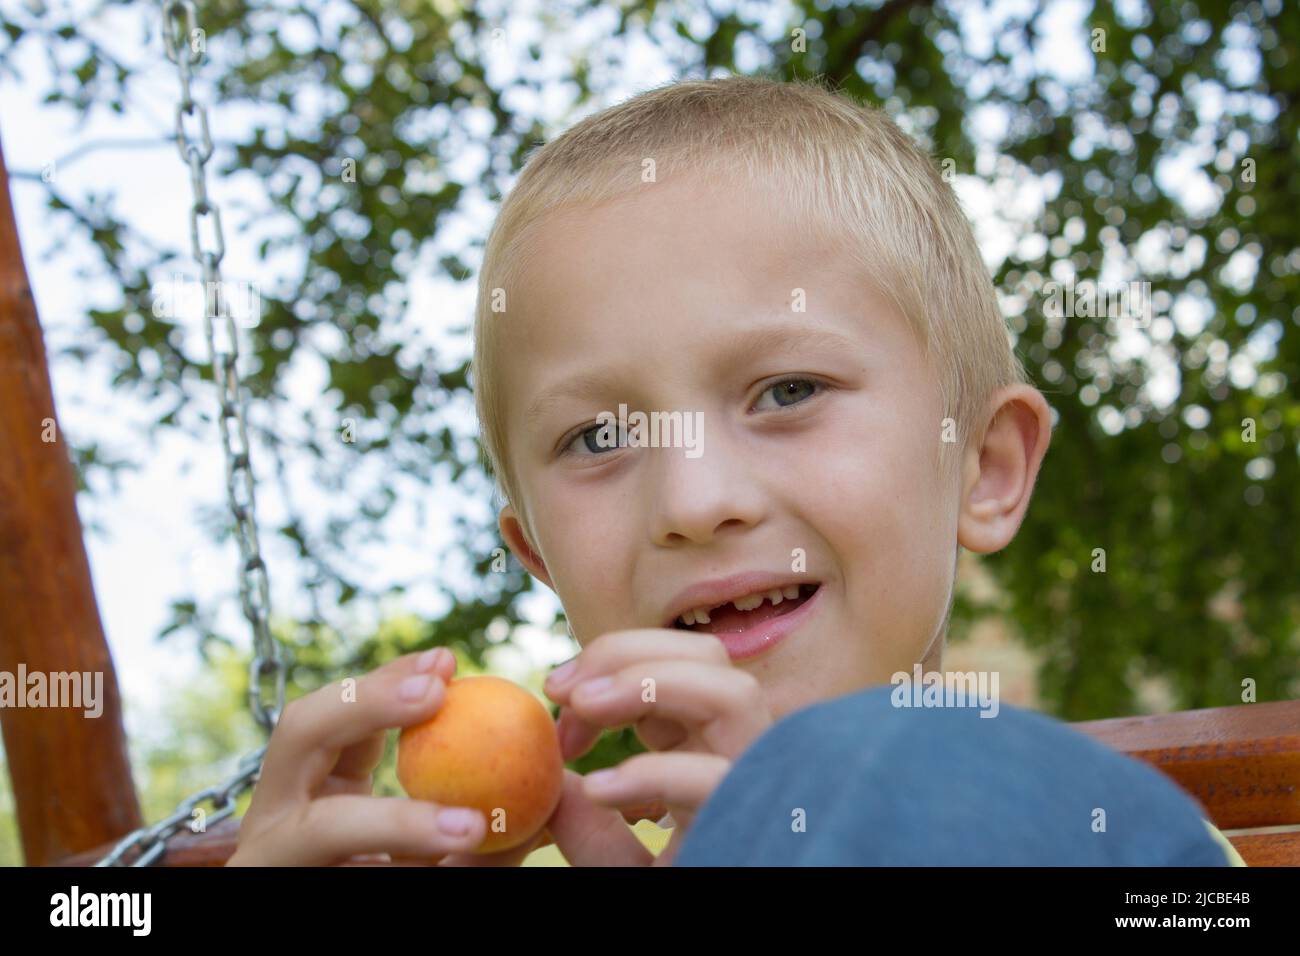 Porträt eines zahnlosen Jungen, der auf einer Bank sitzt Stockfoto